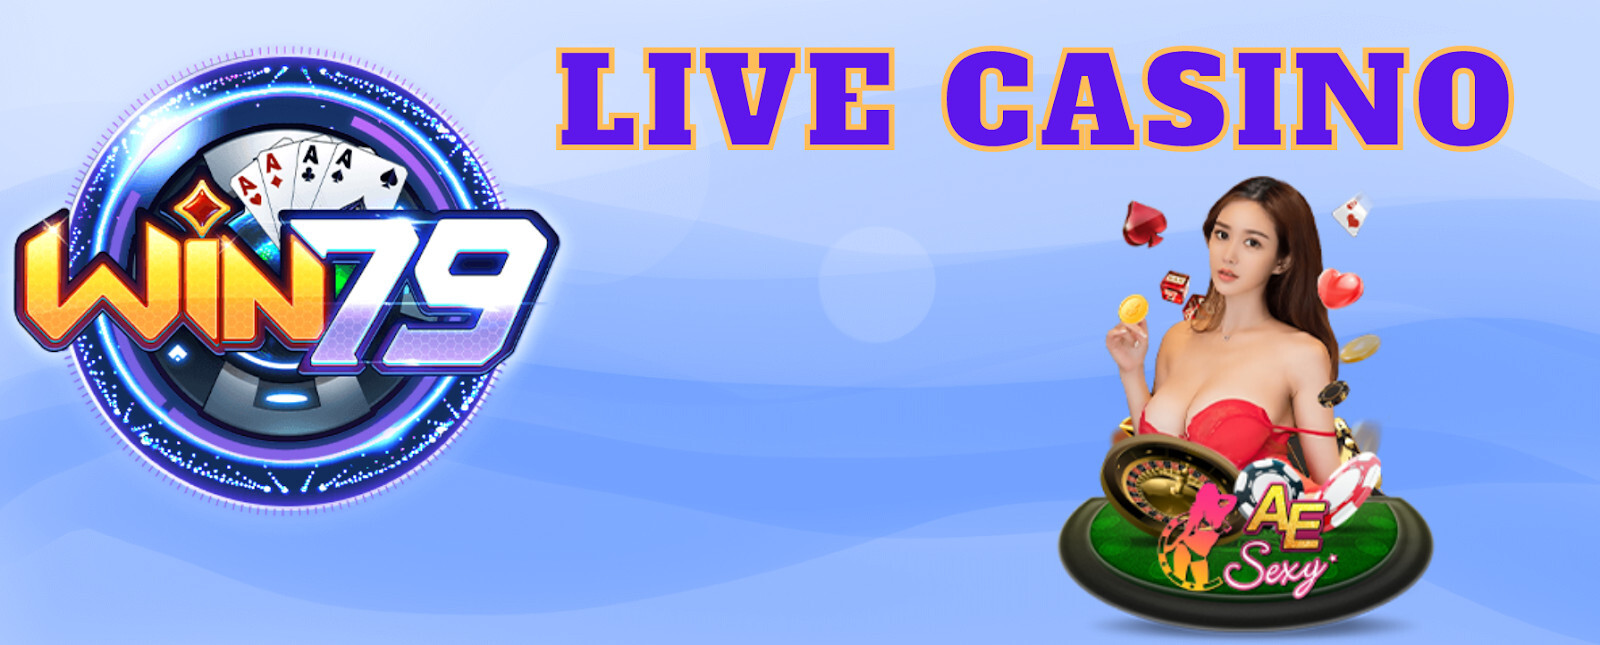 Hướng dẫn chơi Live Casino Win79 chi tiết nhất - nohu79.info